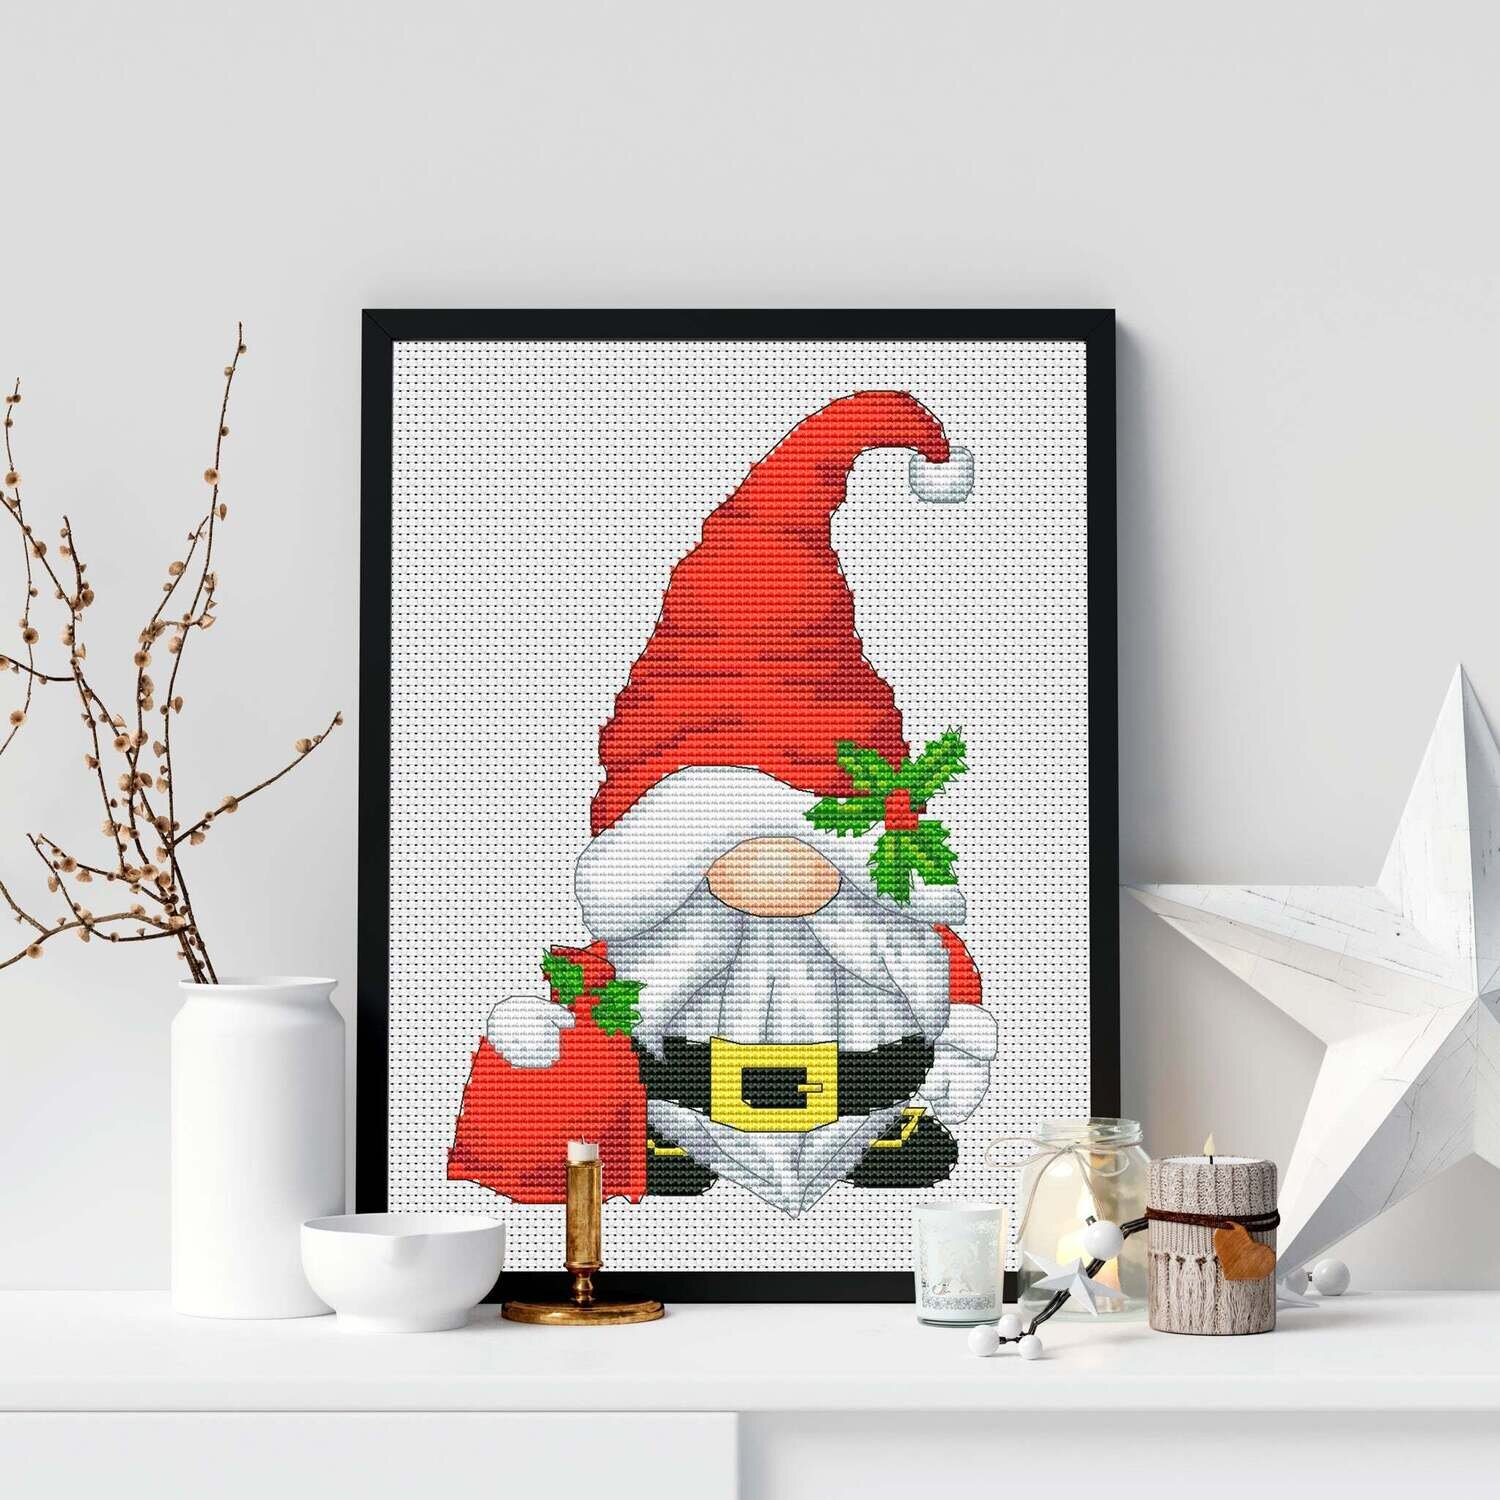 Santa Claus Gnome, Cross stitch pattern, Gnome cross stitch, Christmas cross stitch, Counted cross stitch